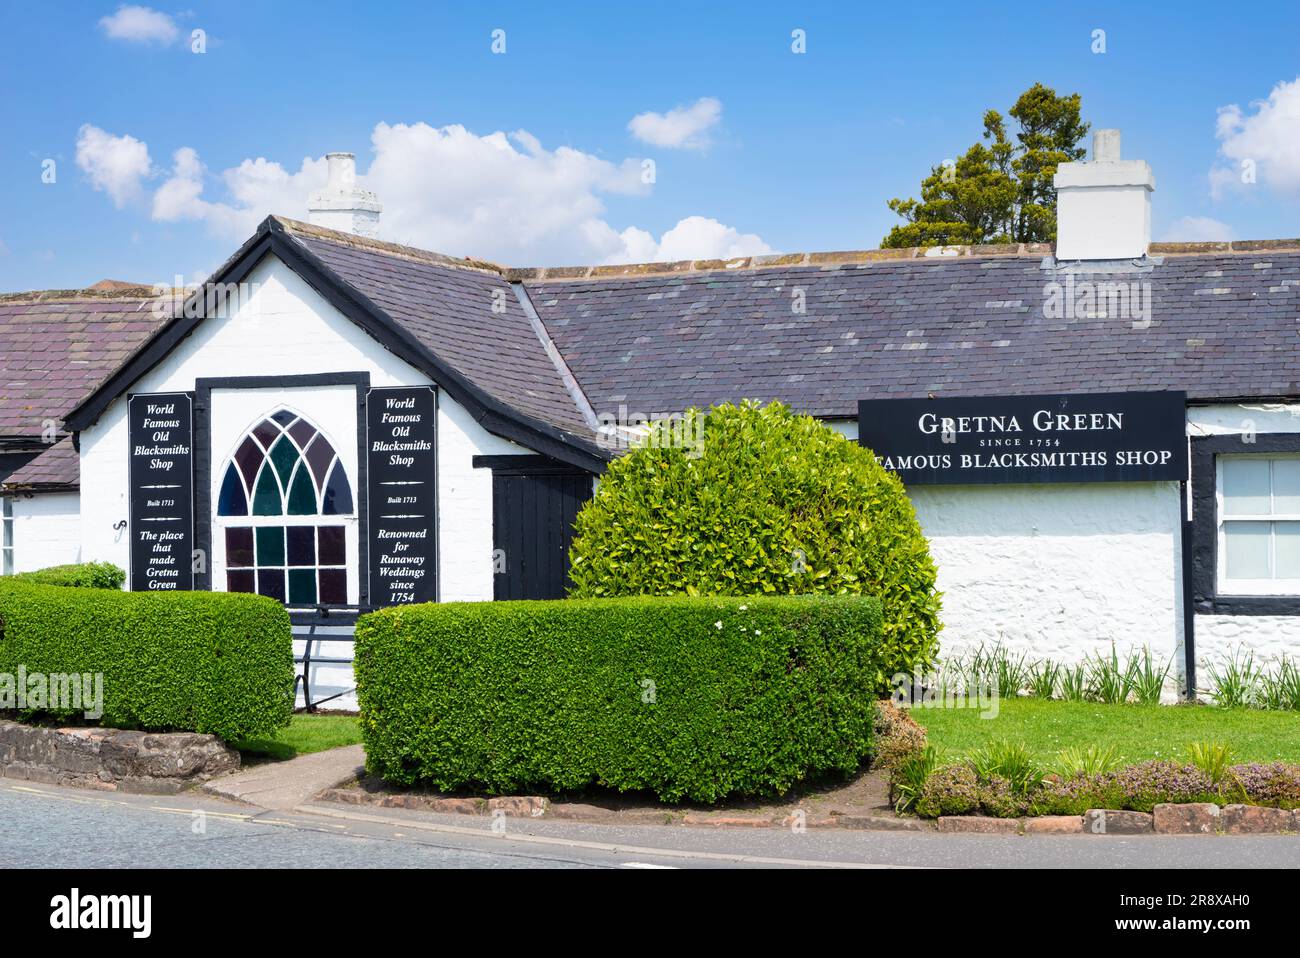 Gretna Green Famous Blacksmiths Shop Veranstaltungsort für die Hochzeit in Gretna Green Dumfries und Galloway Scotland UK GB Europe Stockfoto